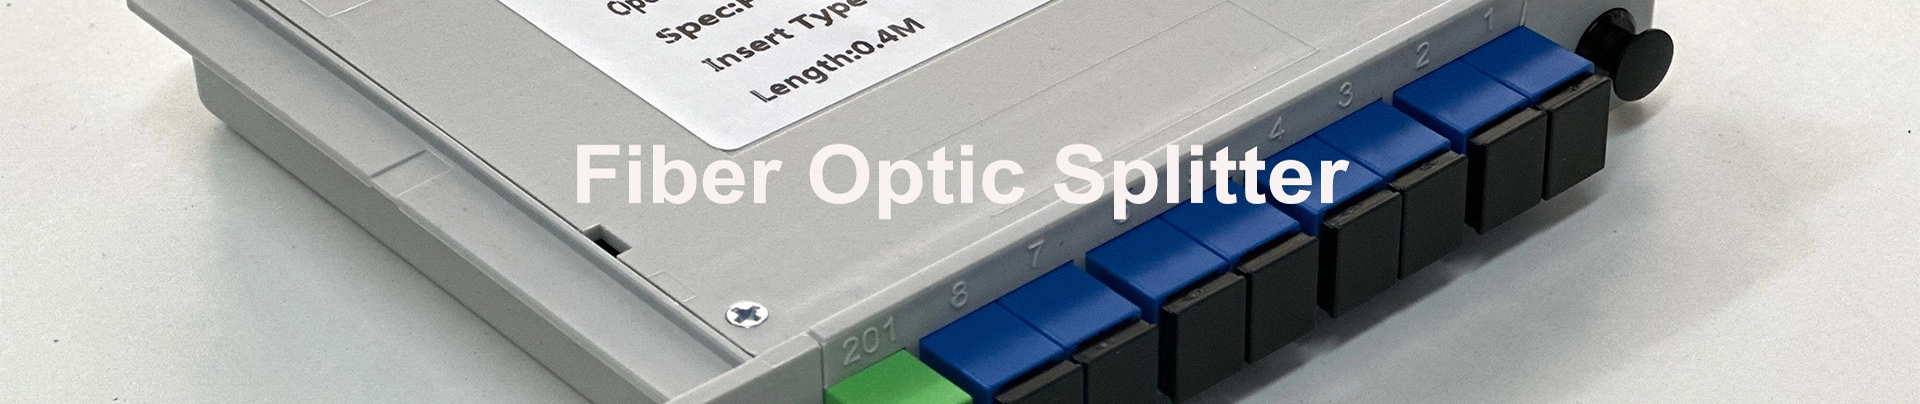 Fiber Optic Splitter